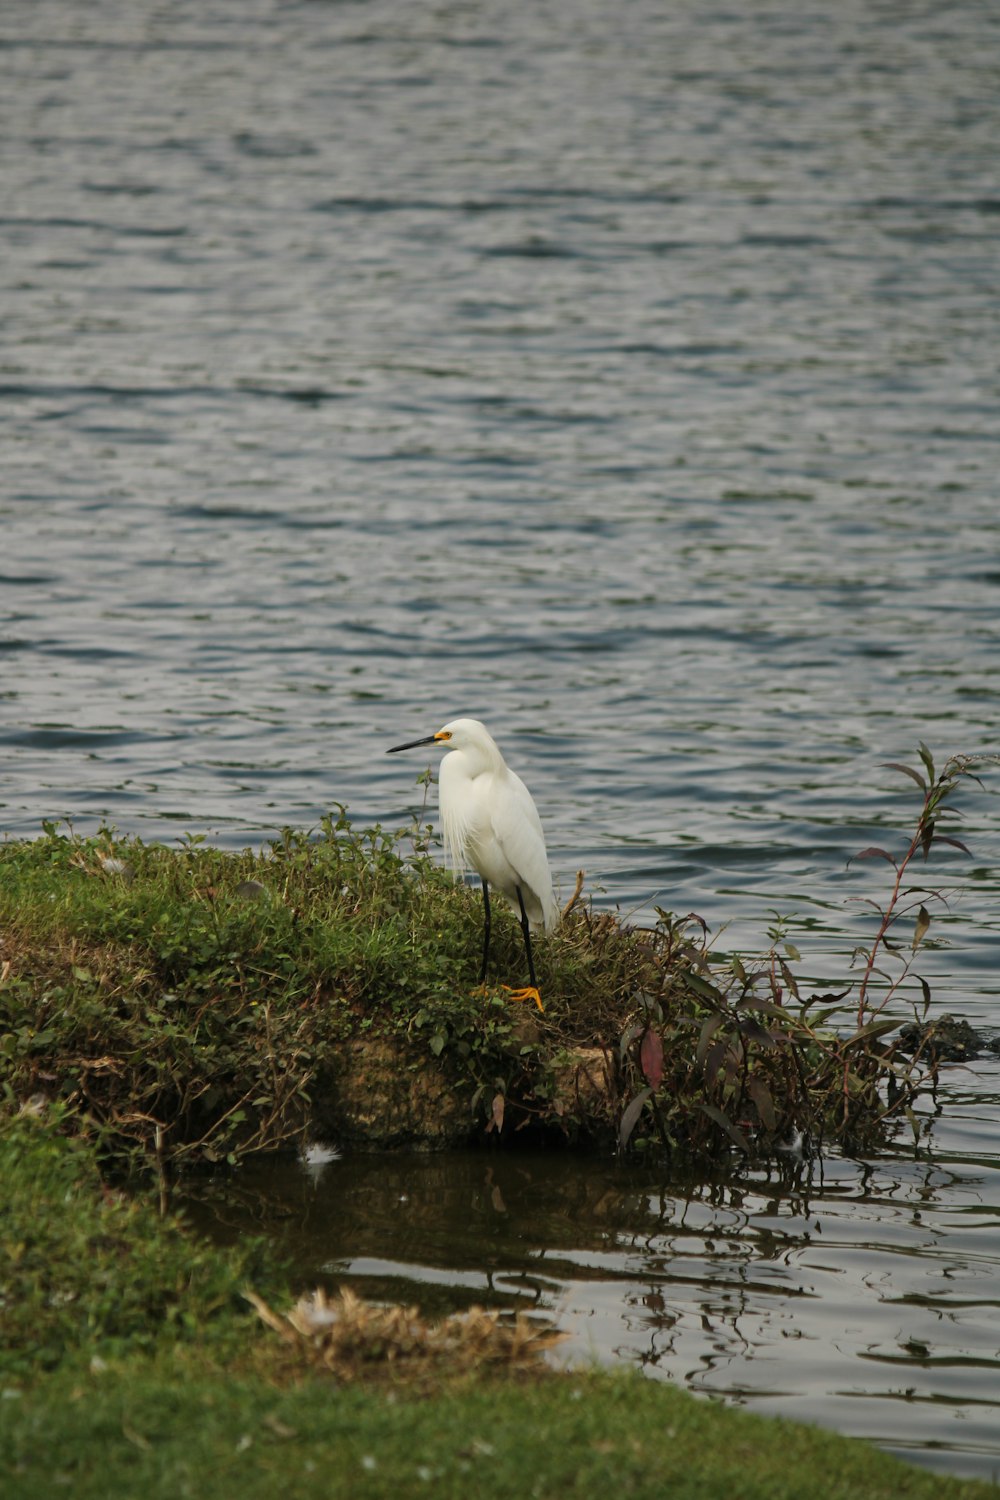 작은 섬 위에 앉아있는 흰 새